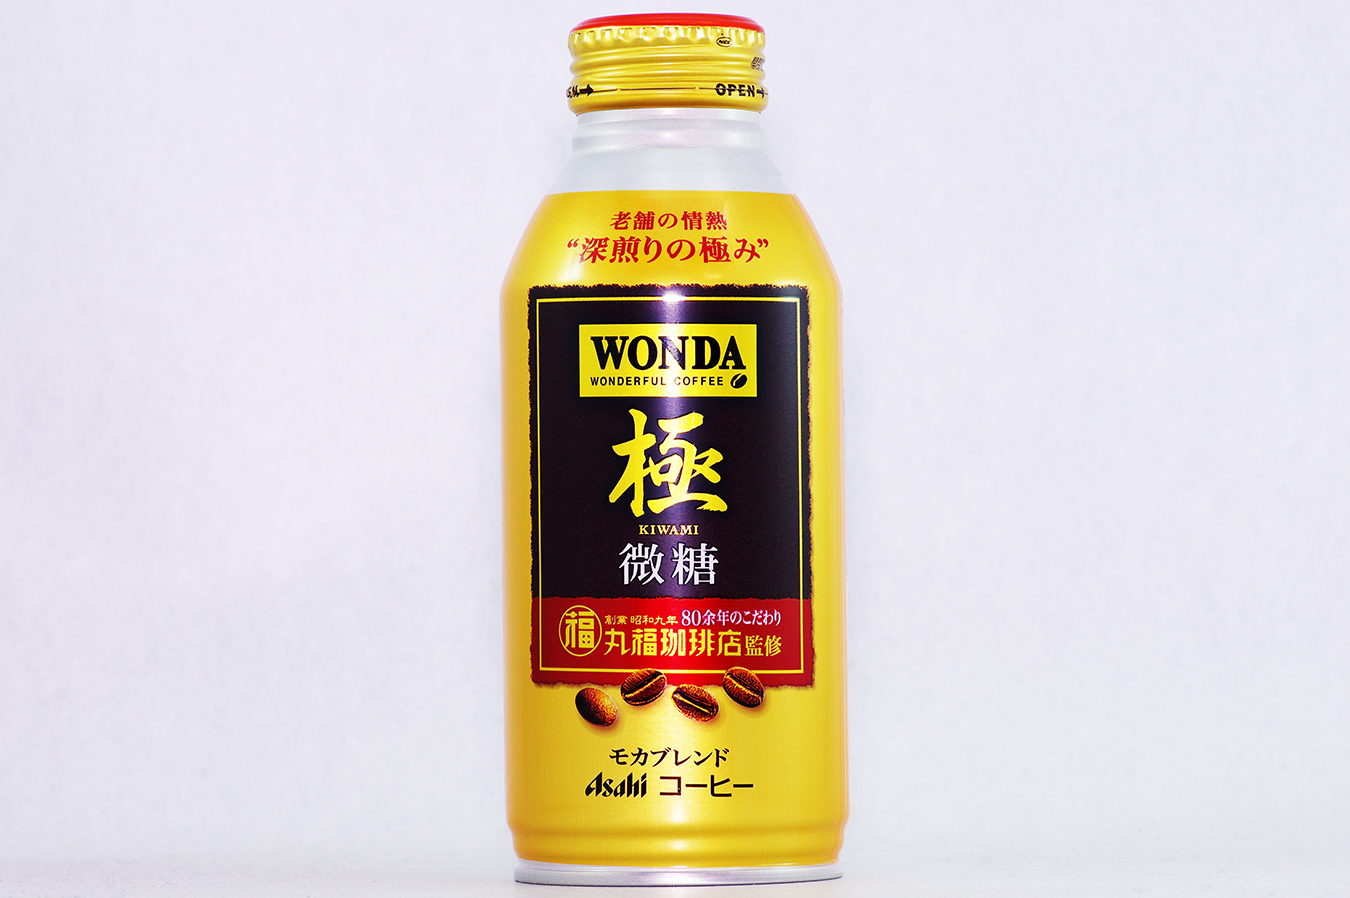 WONDA 極 微糖 ボトル缶370g 2017年1月